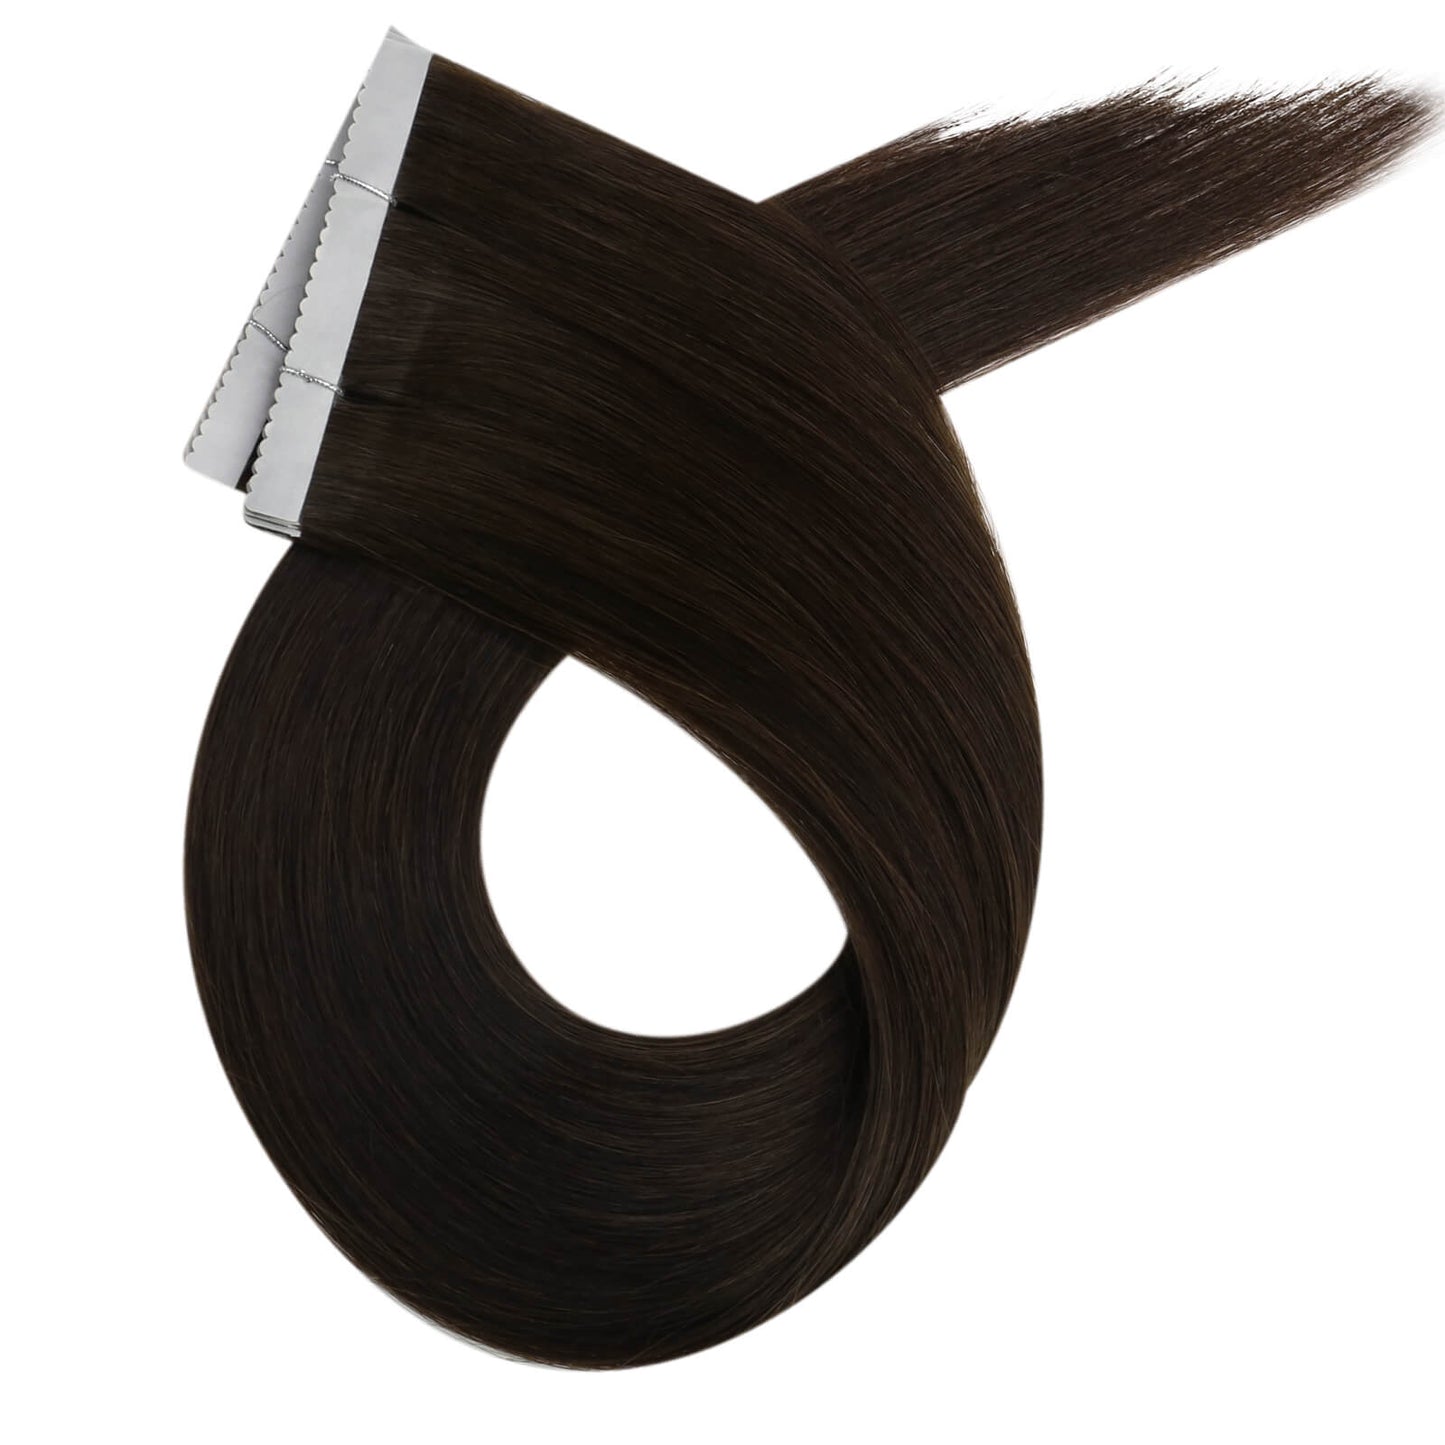 hair extensions tape in human hair darkest brown